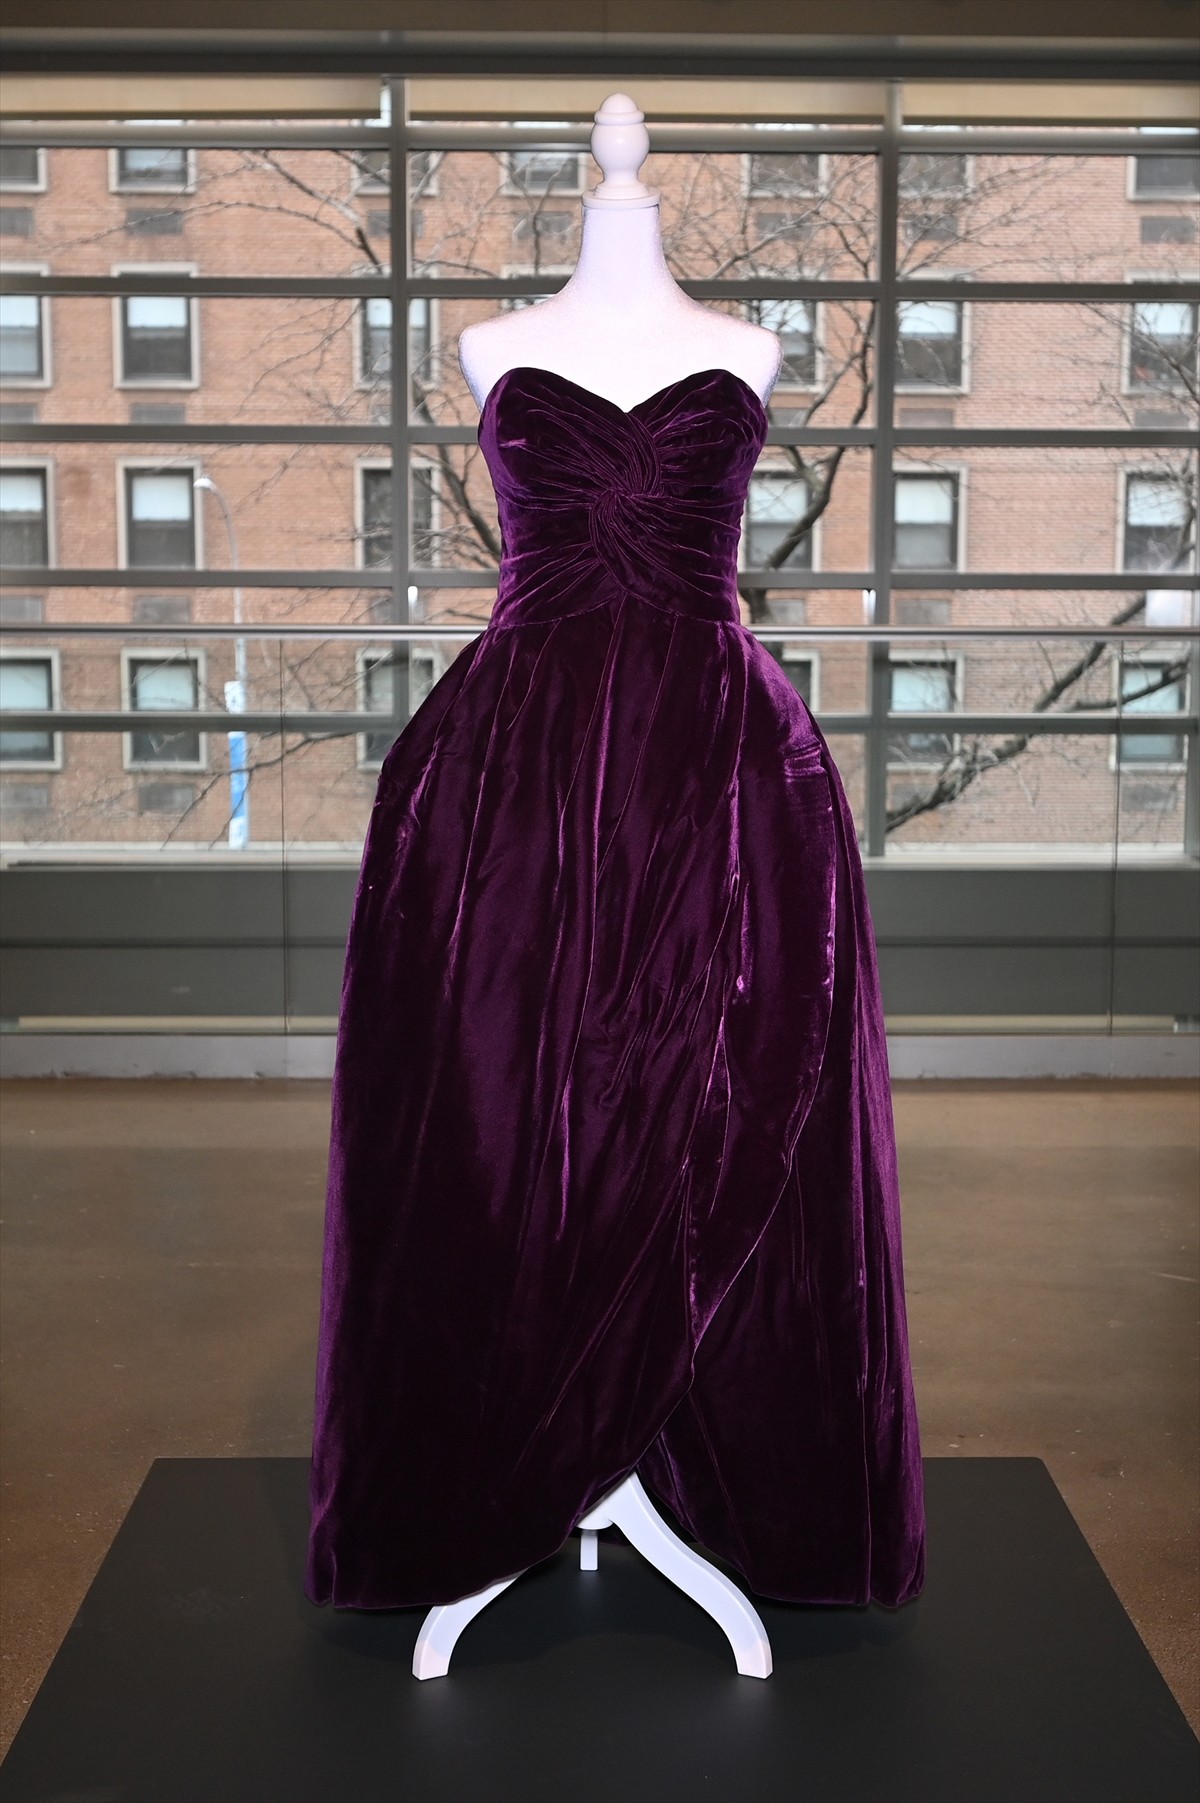 ダイアナ妃のアイコニックなドレス、60万ドルで落札される 